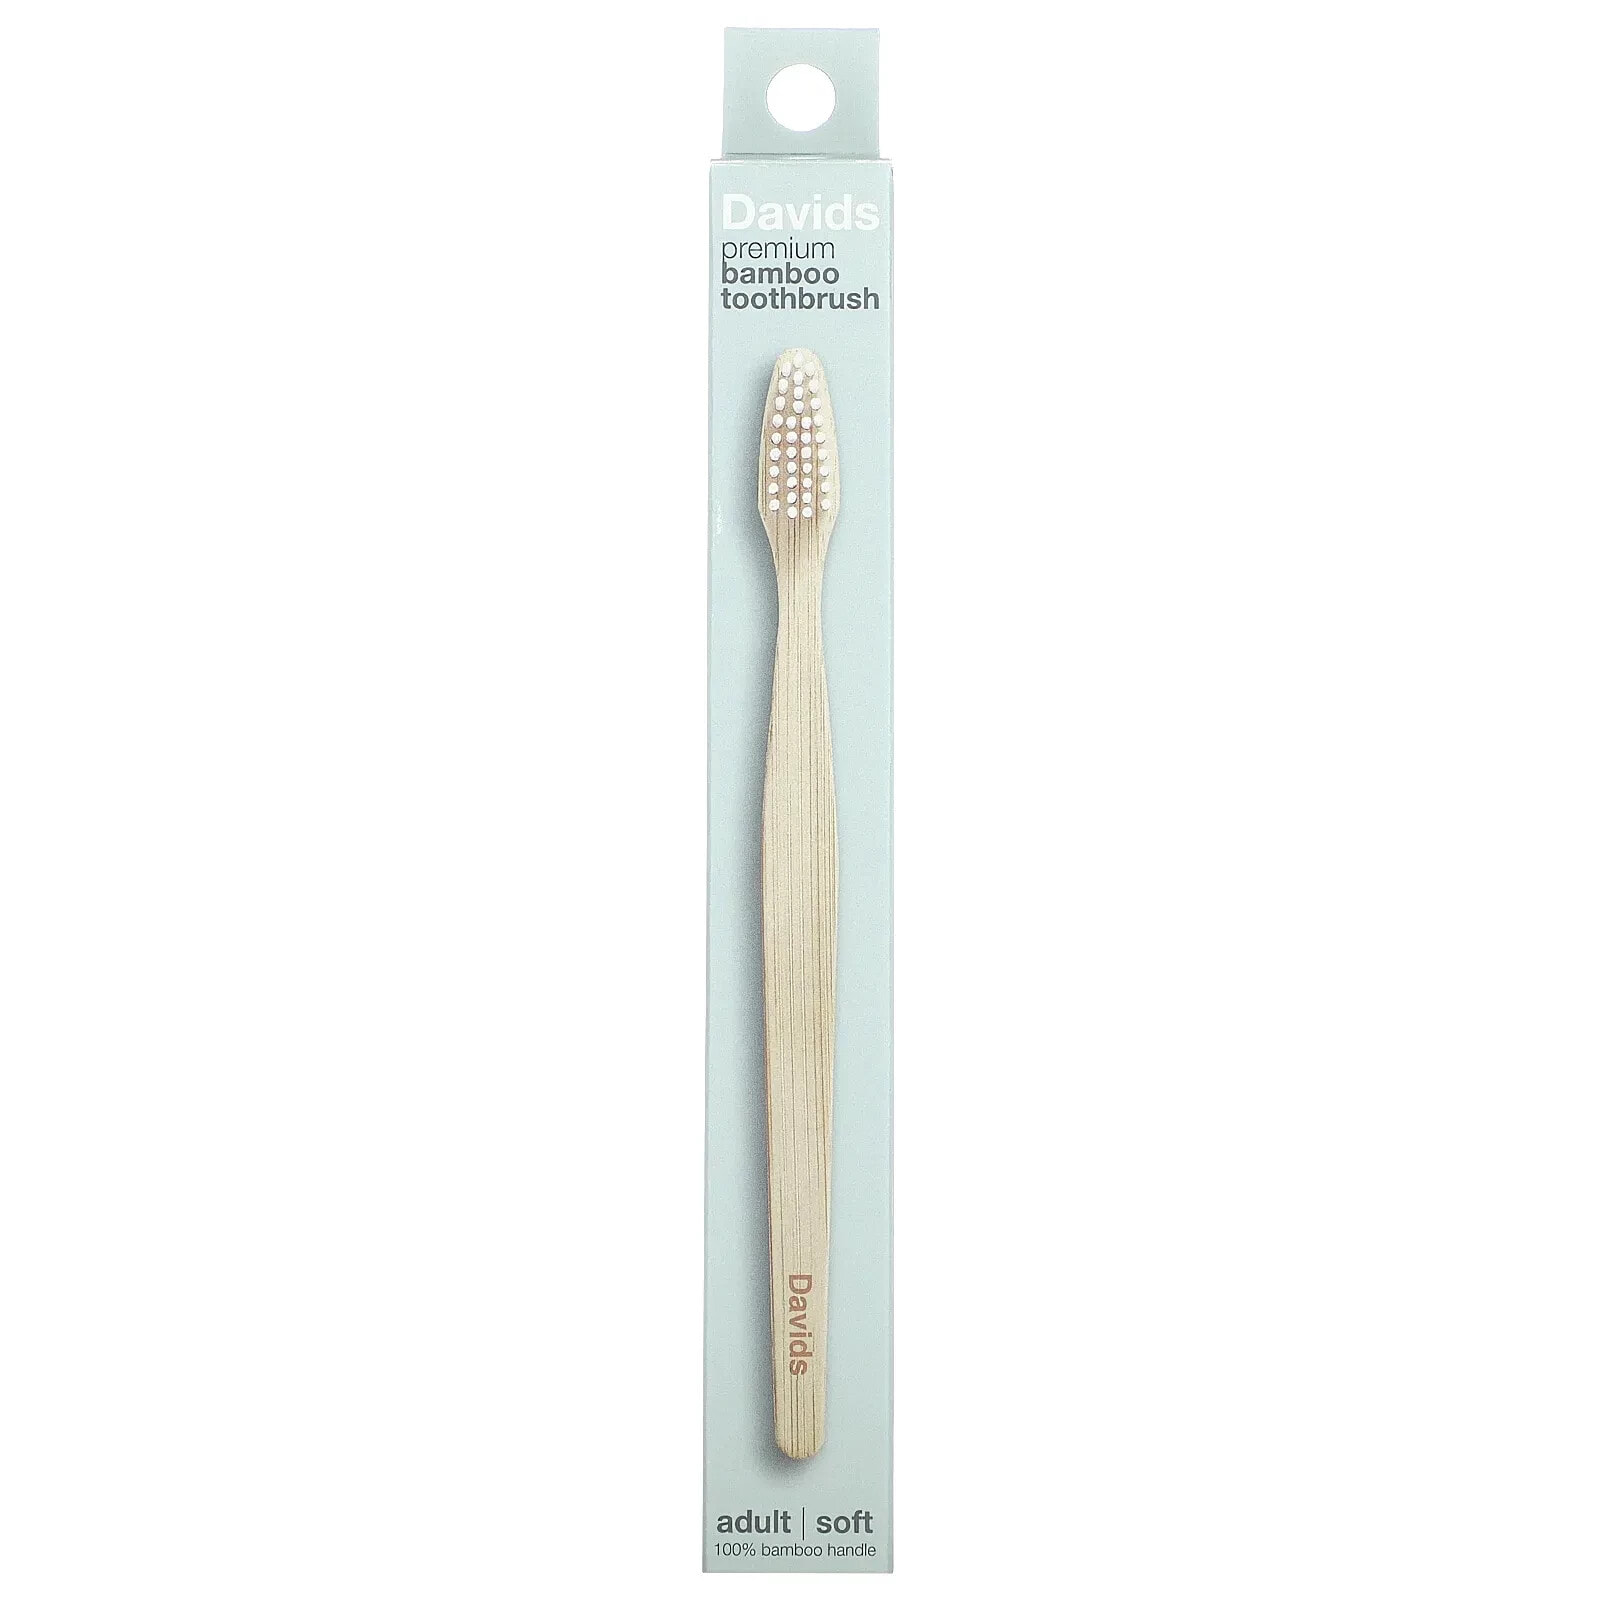 Premium Bamboo Toothbrush, Soft, Adult, 1 Toothbrush